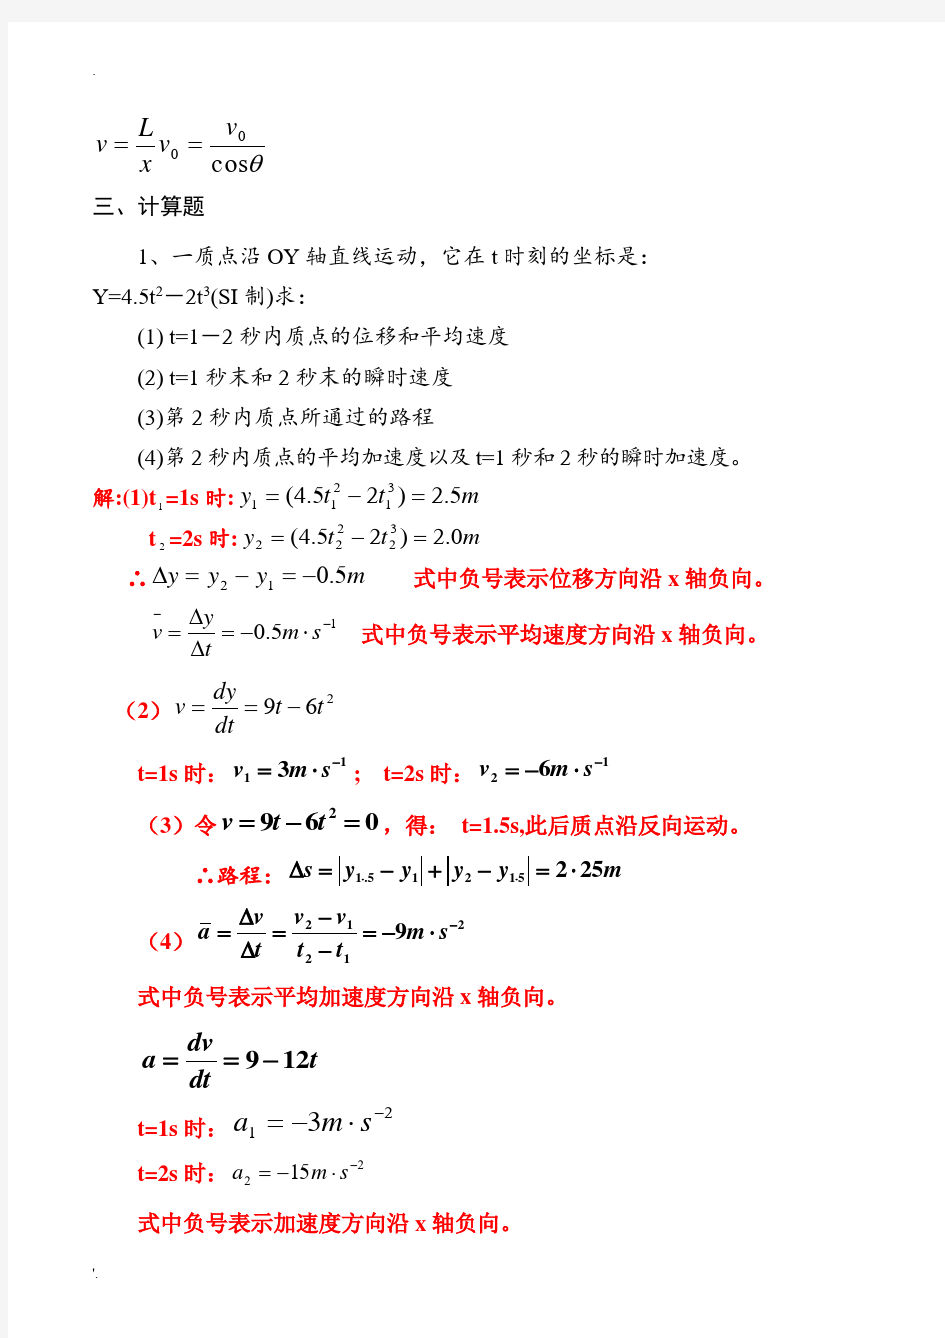 江西理工大学 大学物理习题册及答案 完整版